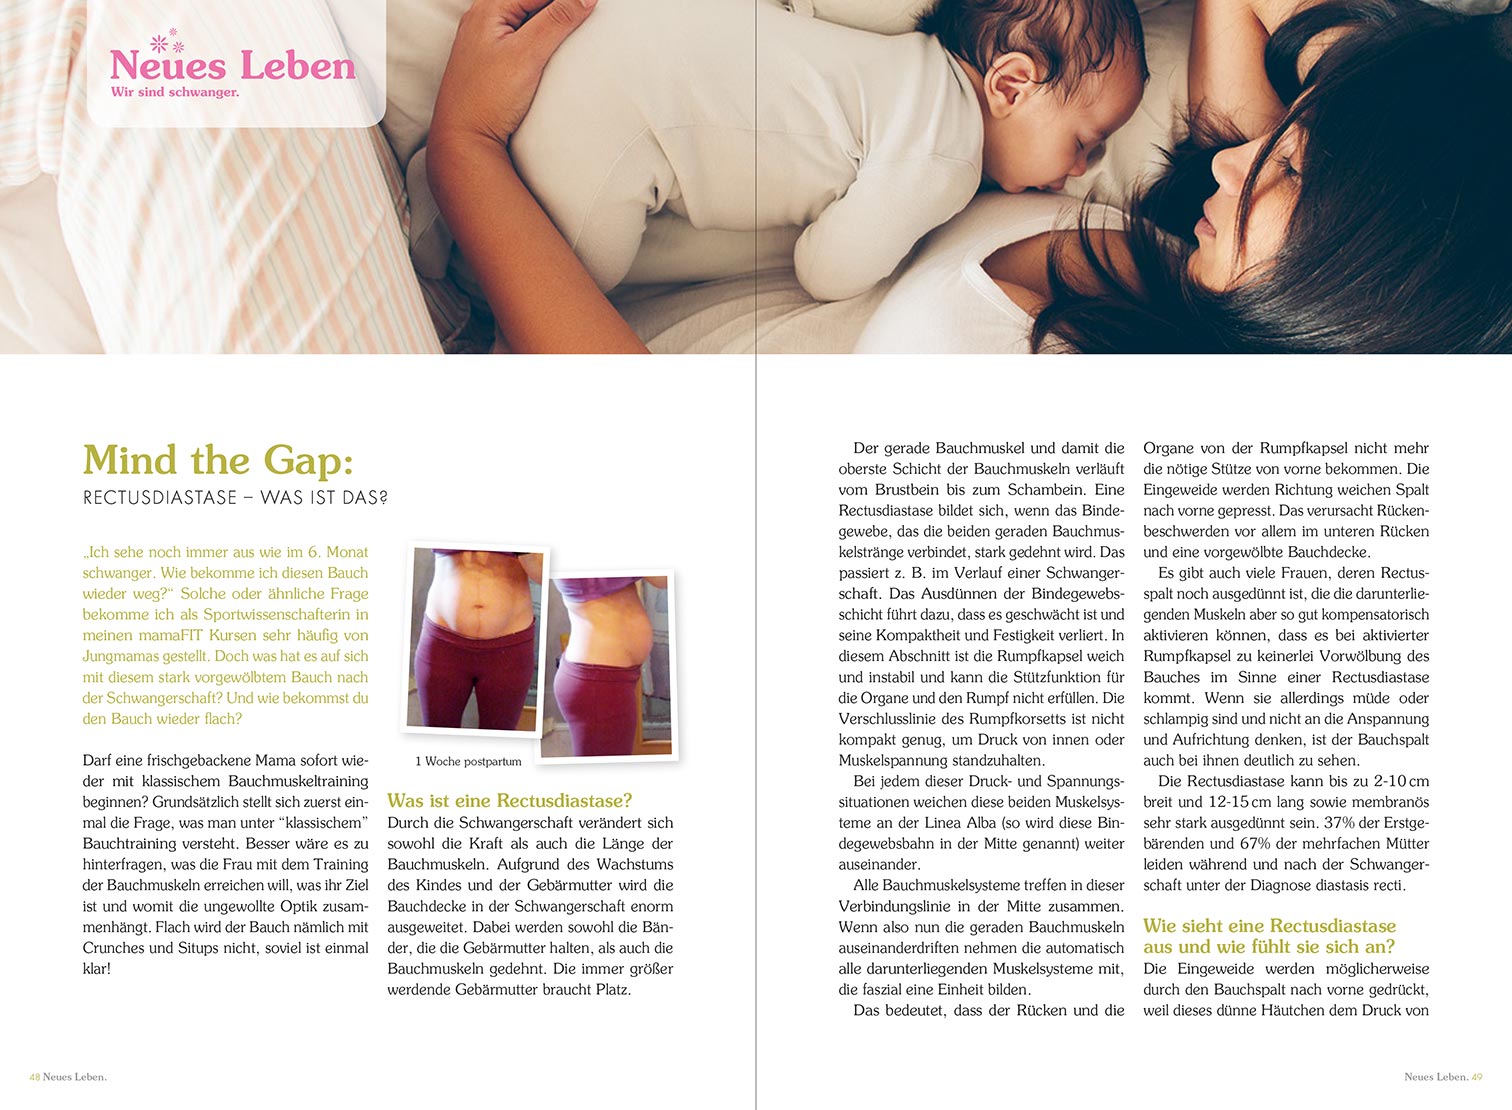 mamaFIT Artikel im Magazin Neues Leben - Wir sind schwanger. Mind the Gap: Rectusdiastase - Was ist das?